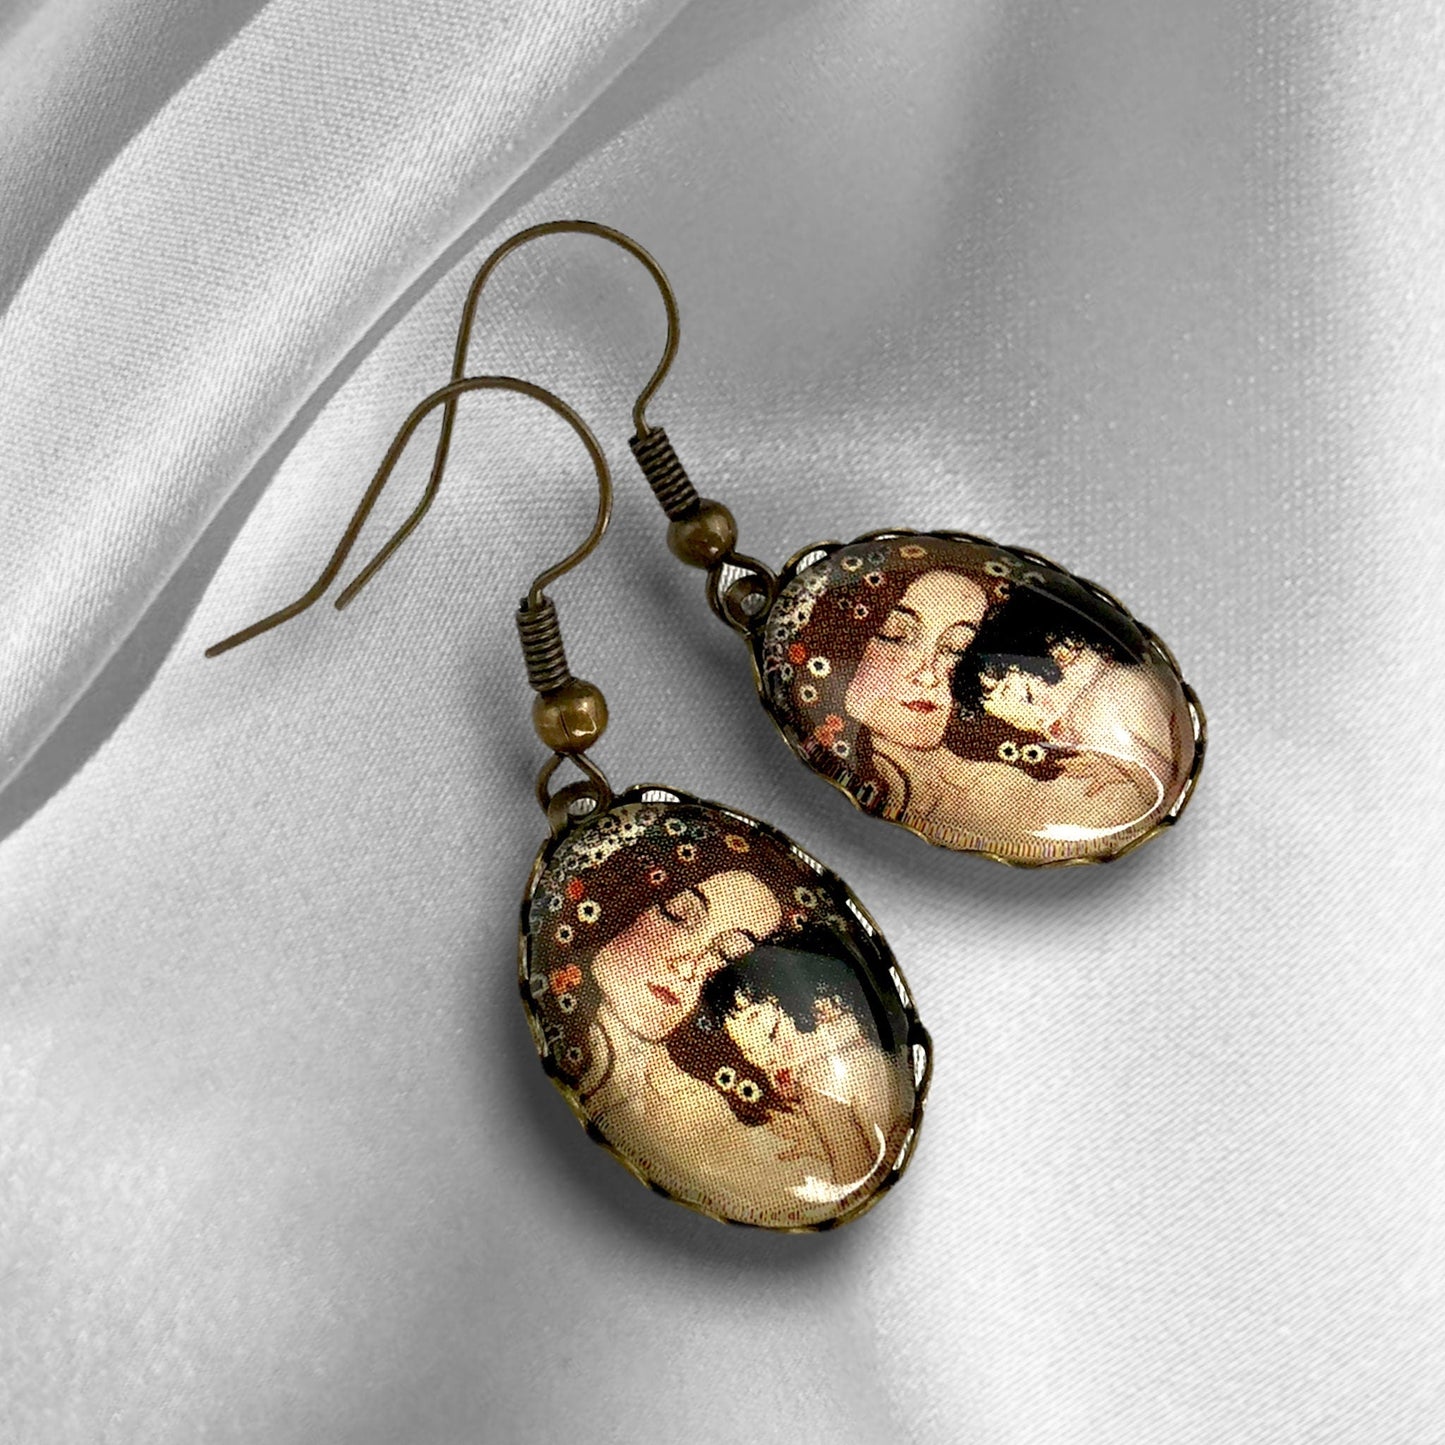 Mother child earrings - Gustav Klimt painter bronze art lovers vintage style earrings - vinohr-27